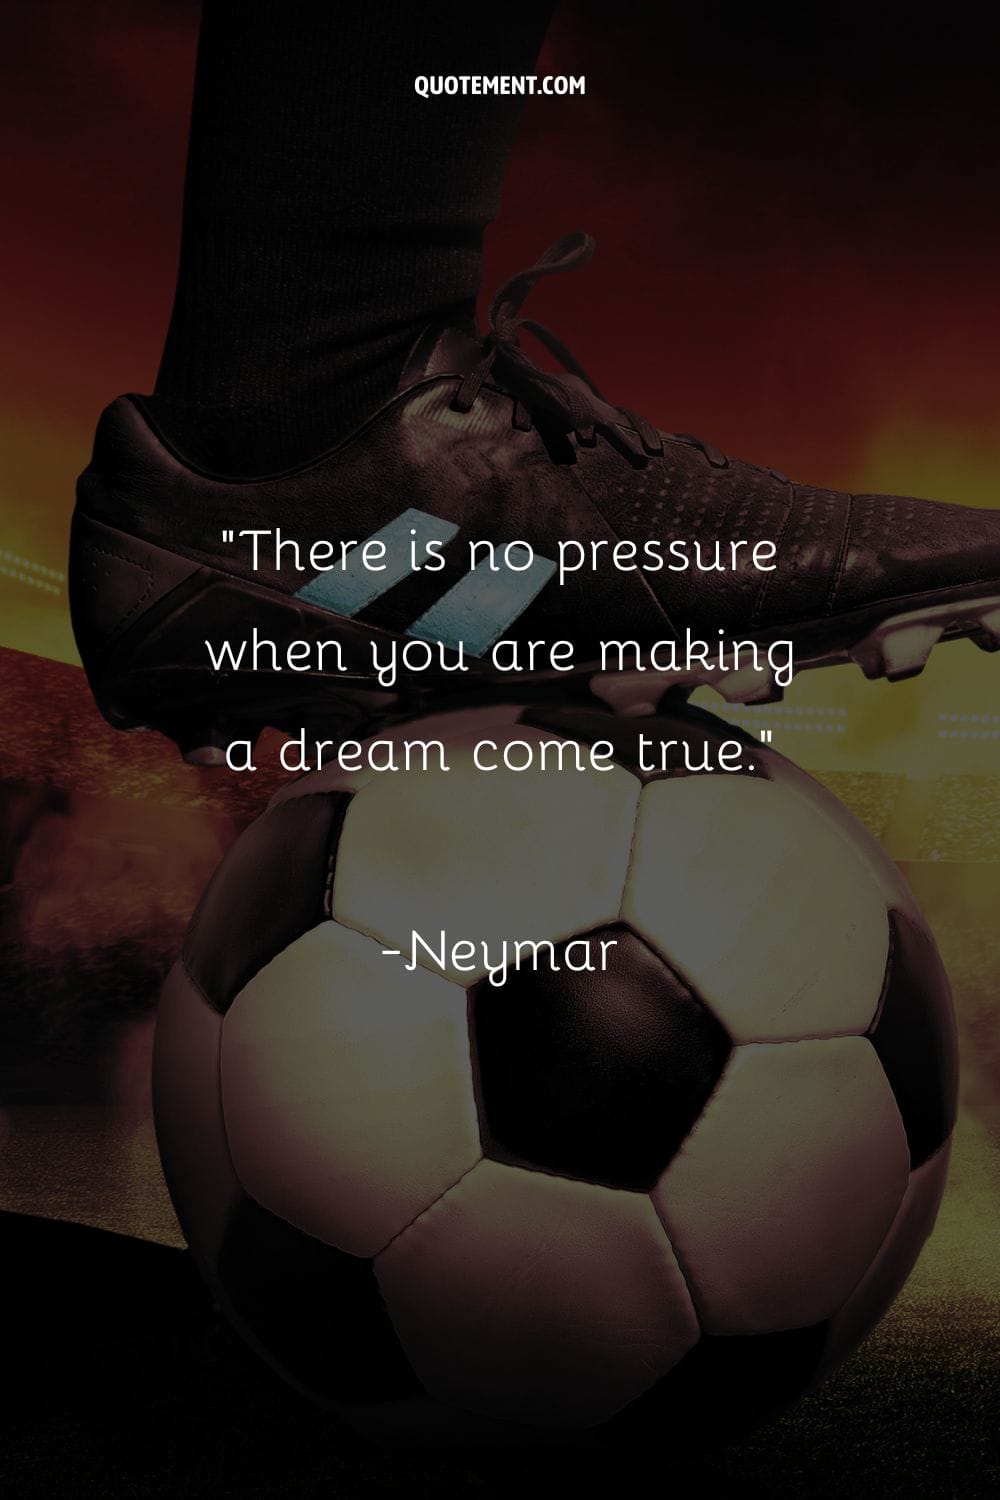 Patada de un profesional del fútbol con tacos negros representando una cita futbolística sobre la inspiración